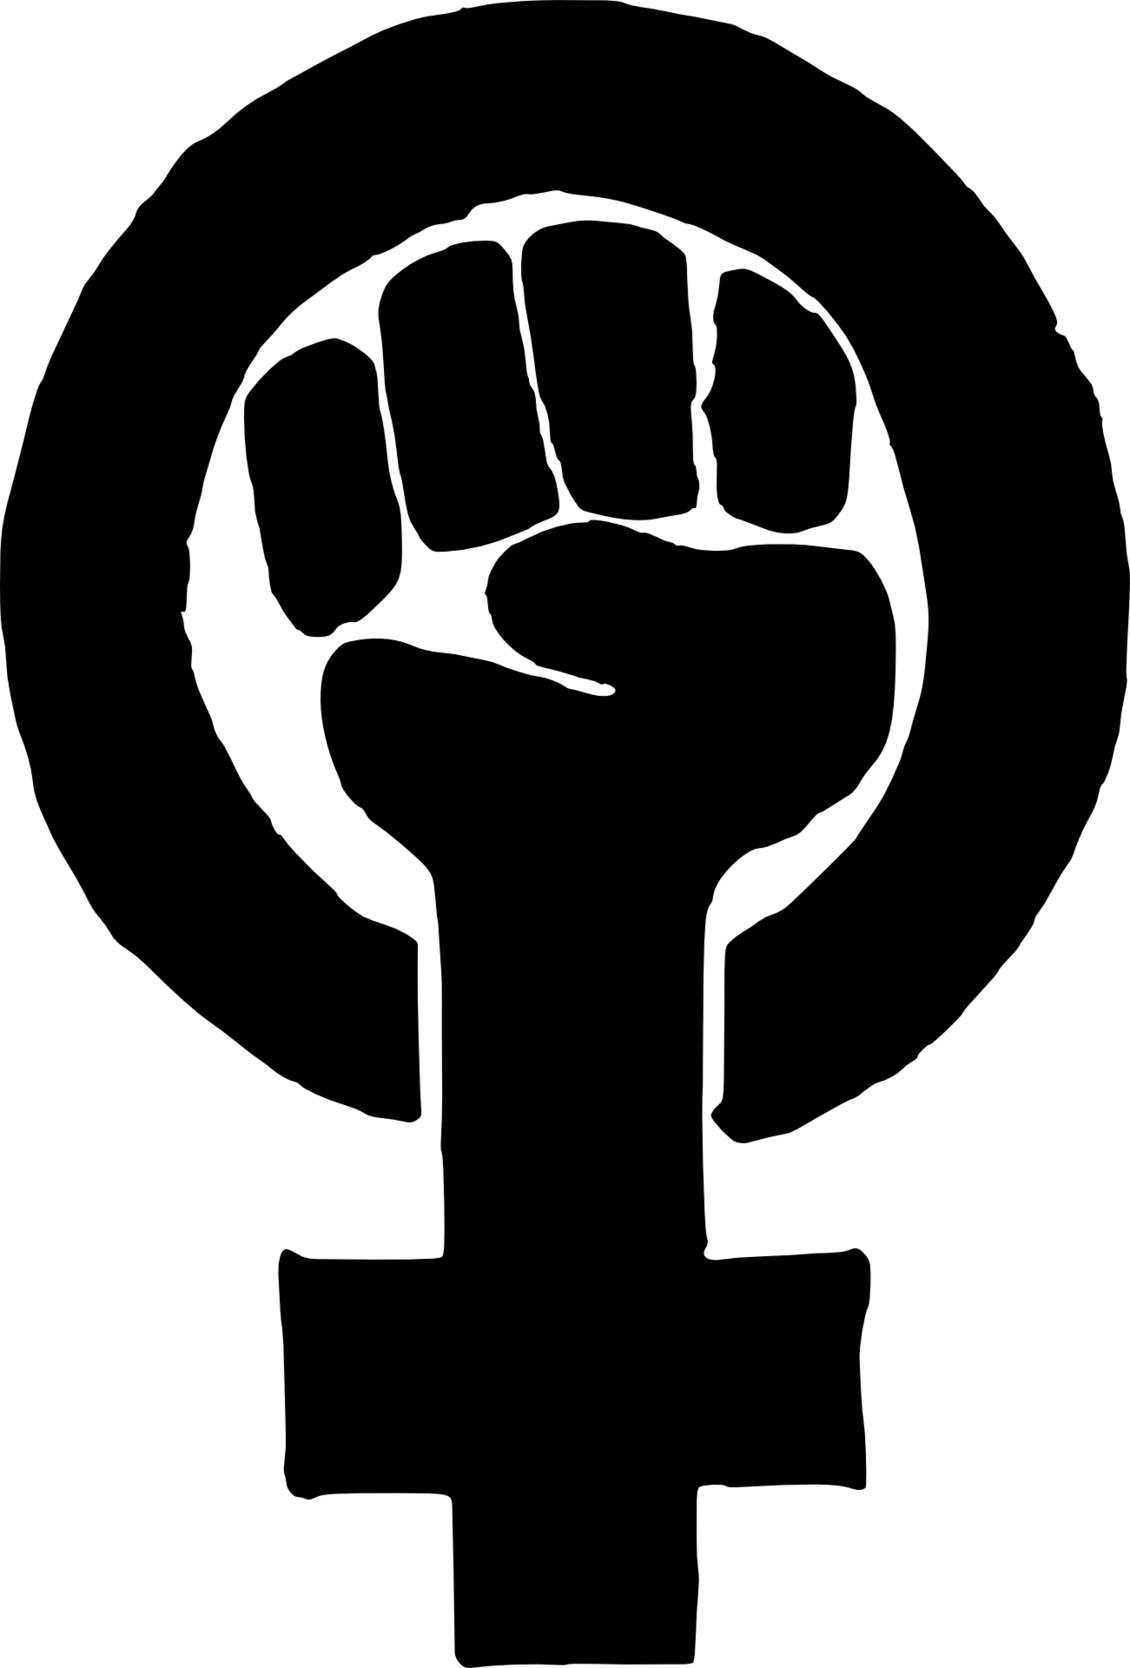 Frauensymbol mit Faust in der Mitte des Kreises